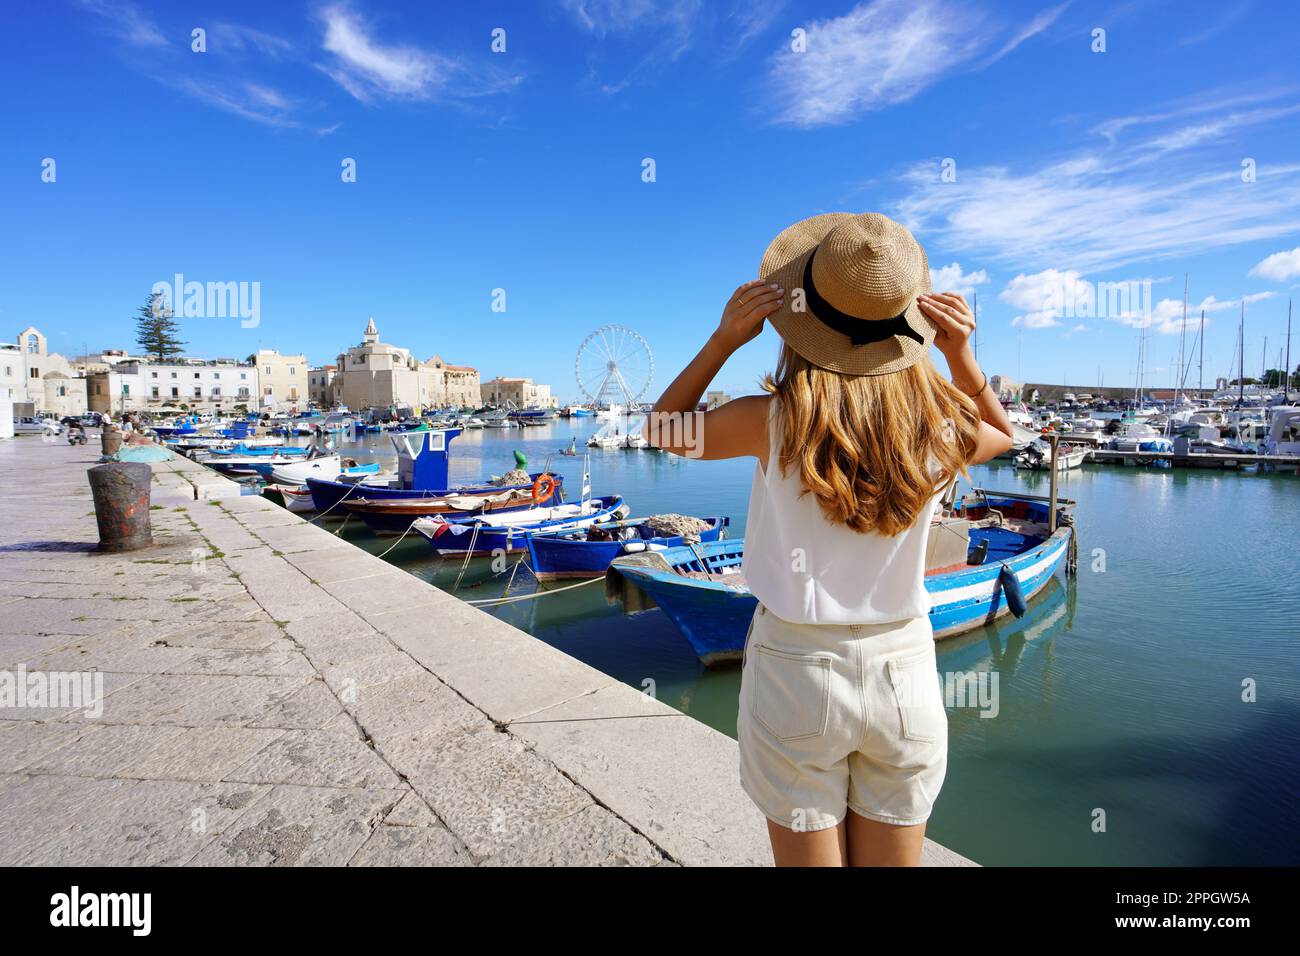 Vacances en Apulia. Vue arrière de la belle fille de voyageur appréciant la vue de la ville historique de Trani et du port. Vacances d'été en Italie. Banque D'Images